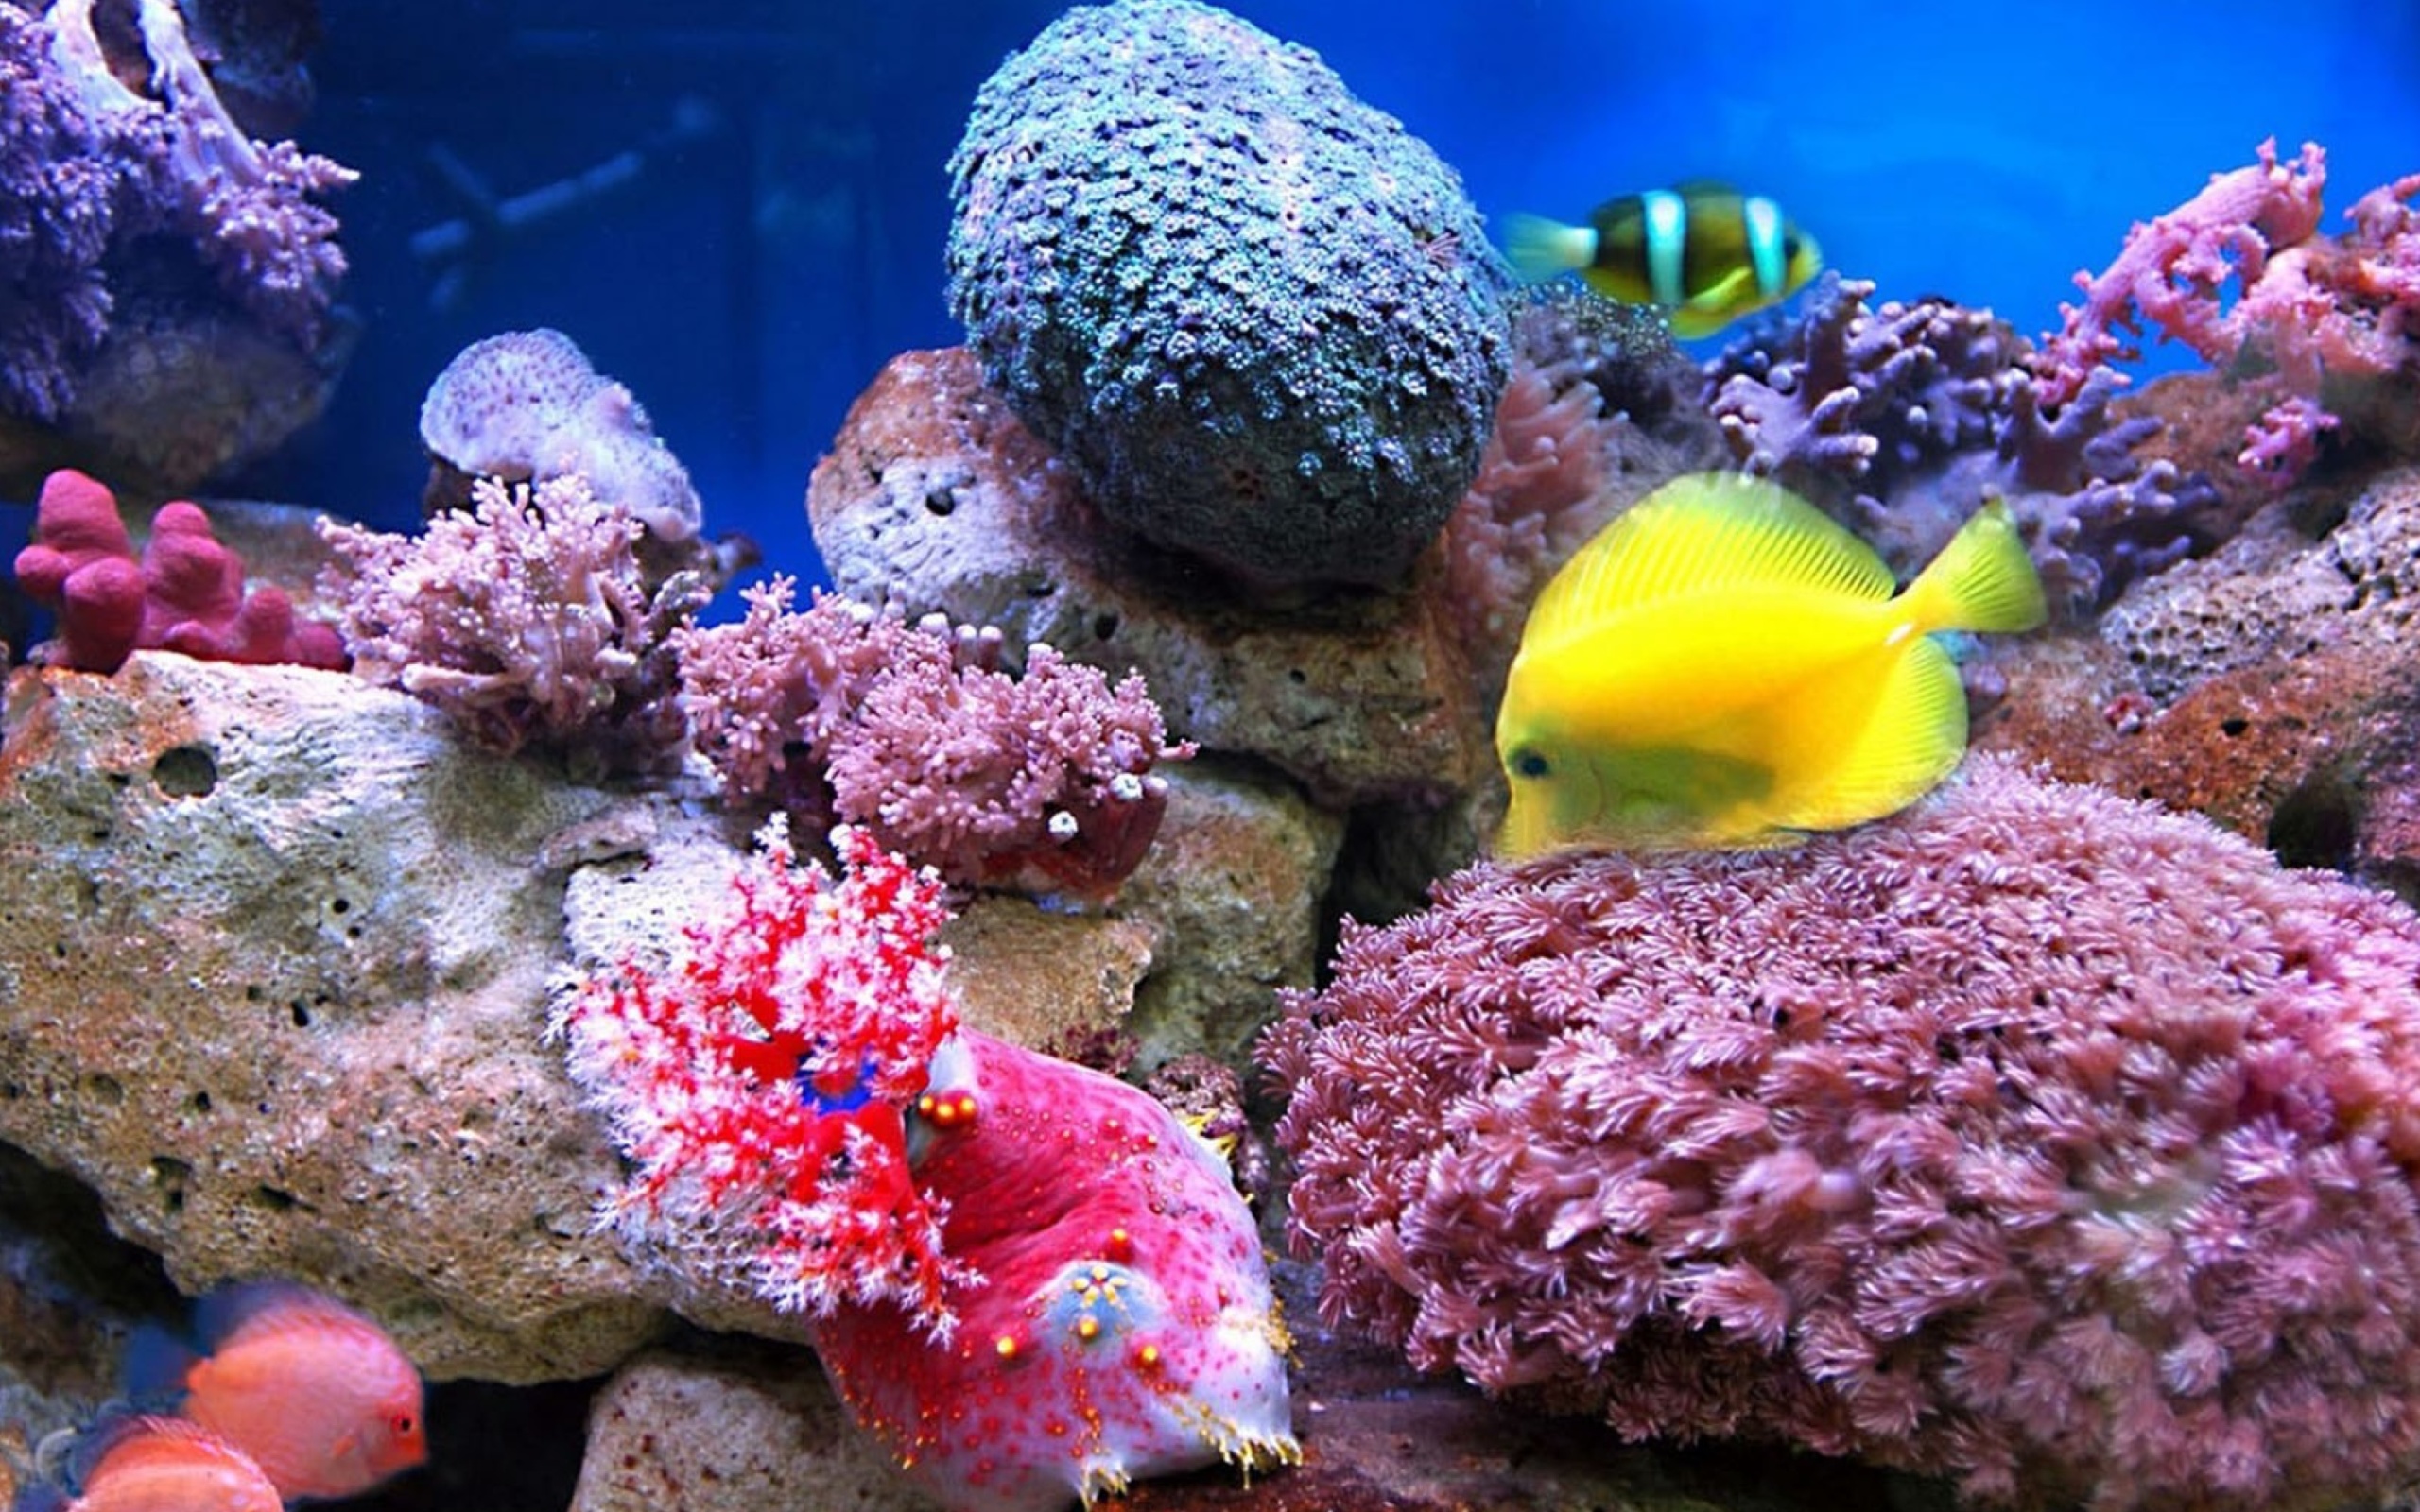 Das Colorful marine fishes in aquarium Wallpaper 2560x1600